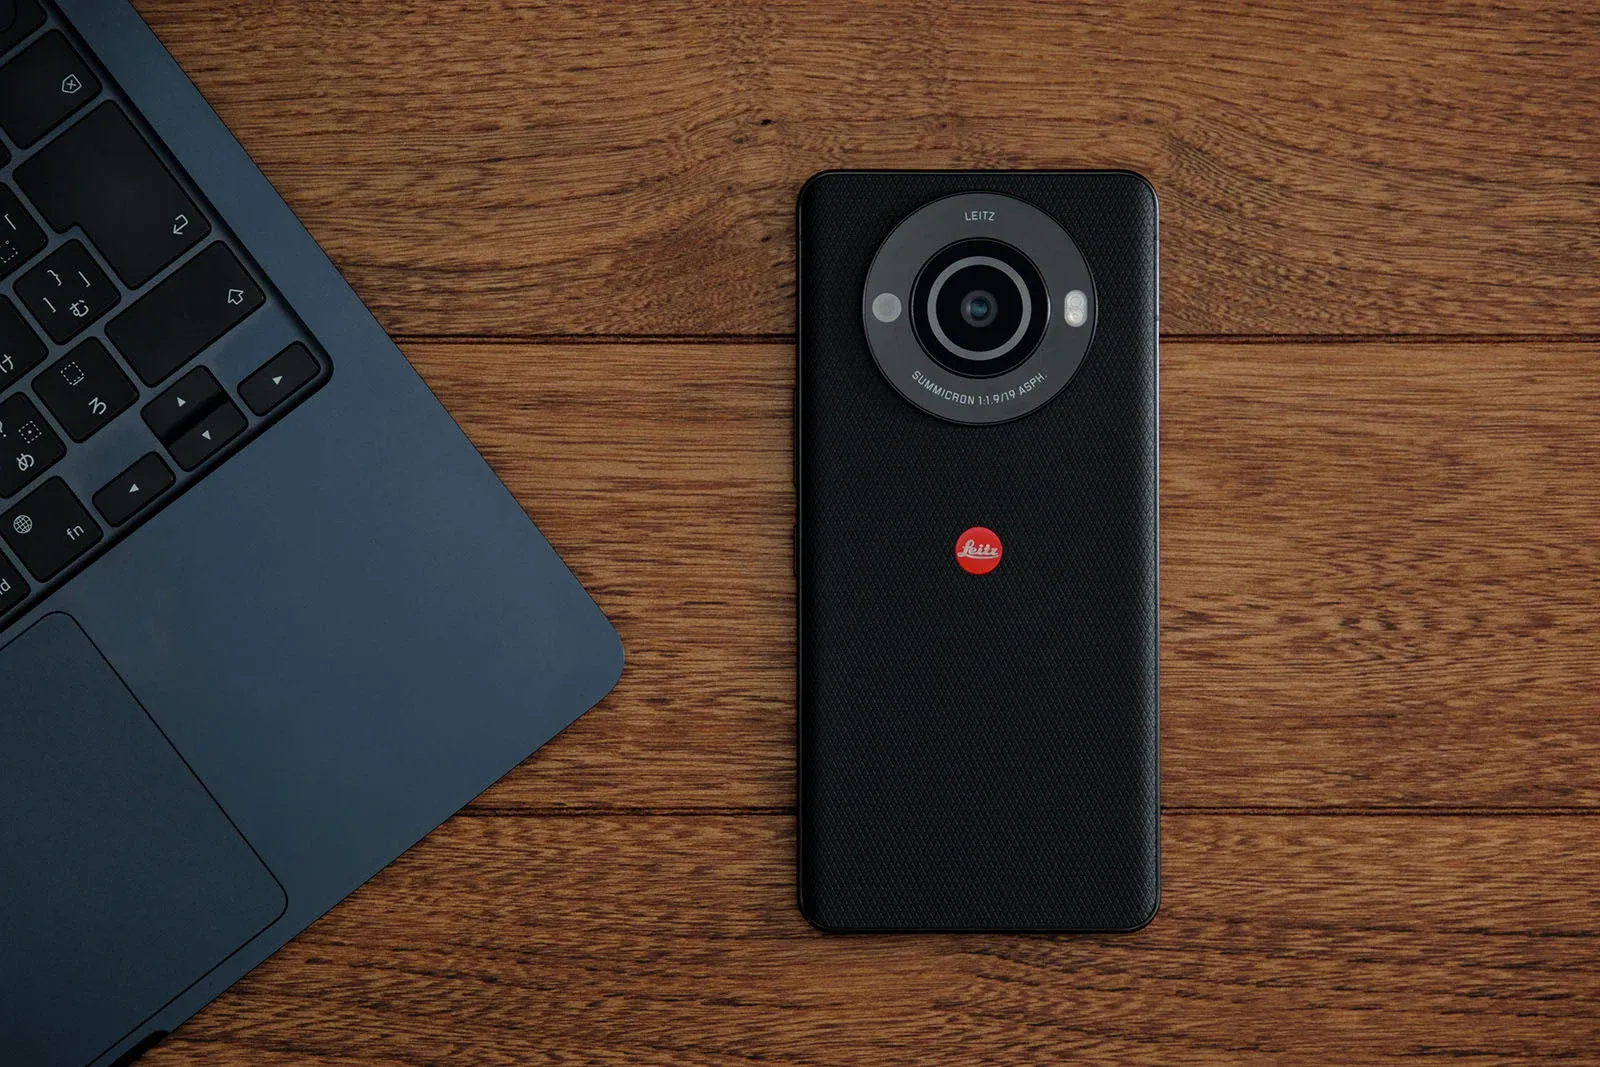 Leica Leitz Phone 3 ra mắt với cảm biến không đổi nhưng nâng cấp hiệu năng và cải tiến phần mềm